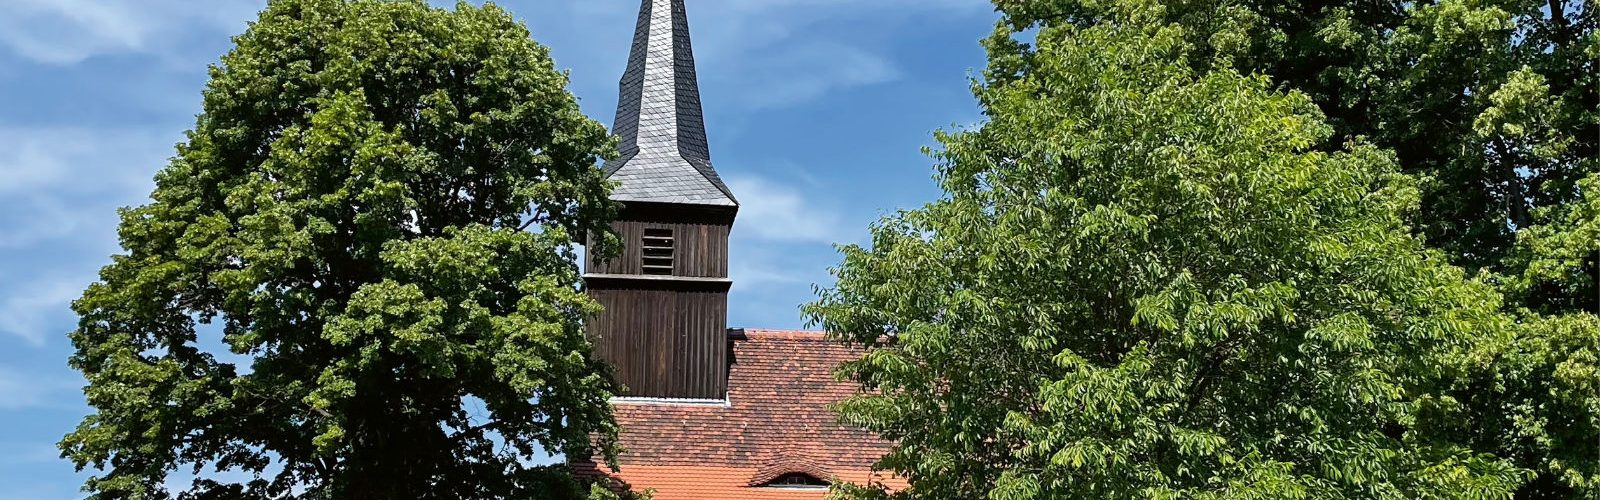 Dorfkirche Blankenfelde